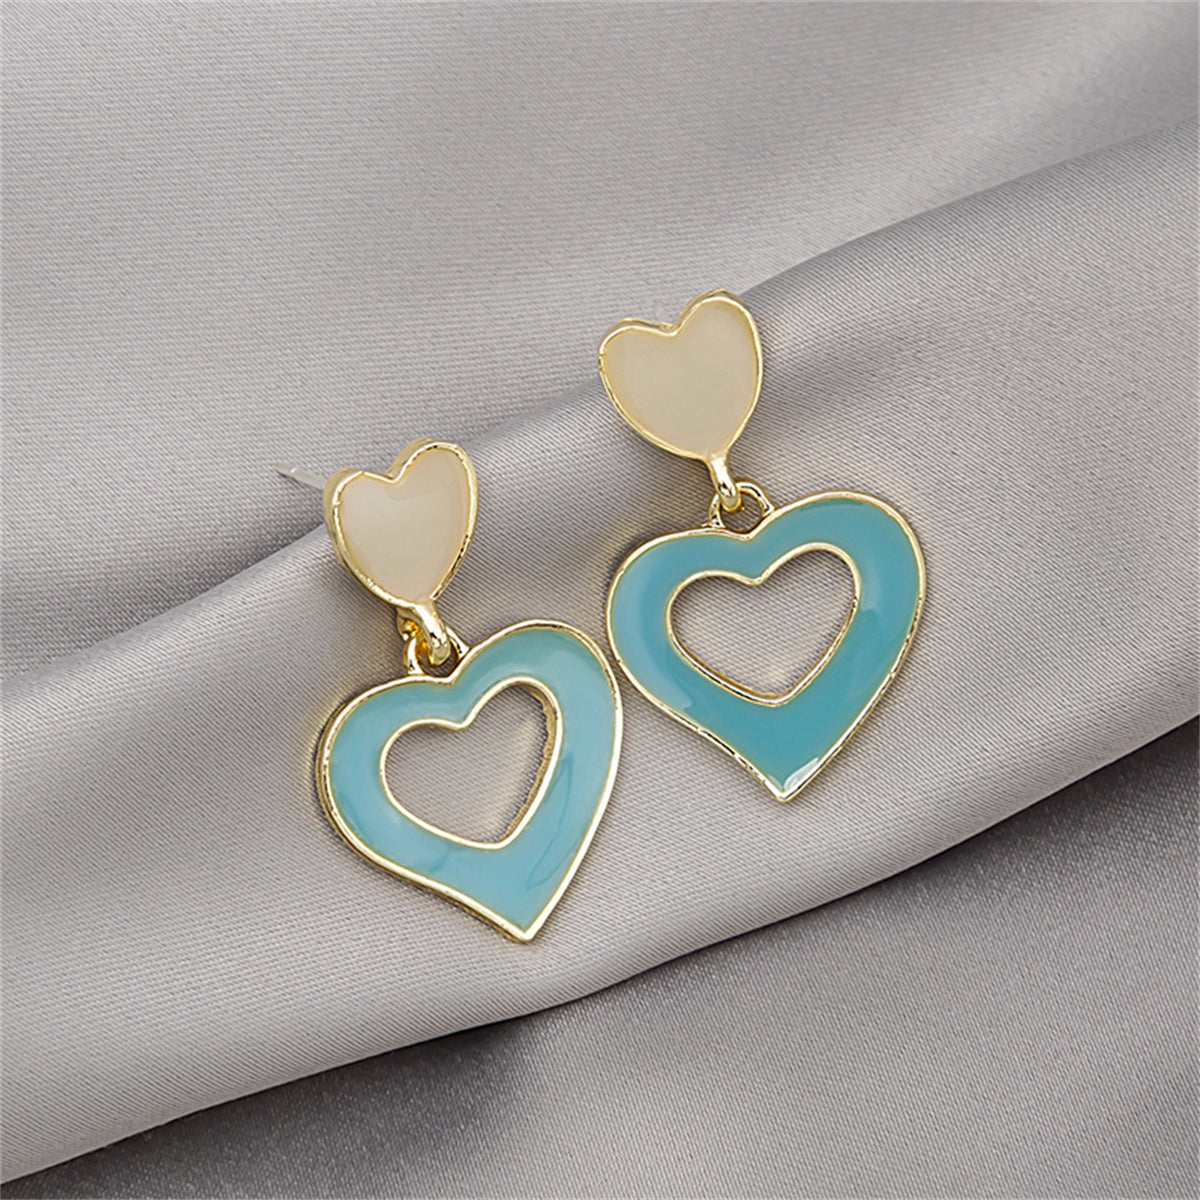 Aqua Enamel & 18K Gold-Plated Open Heart Drop Earrings